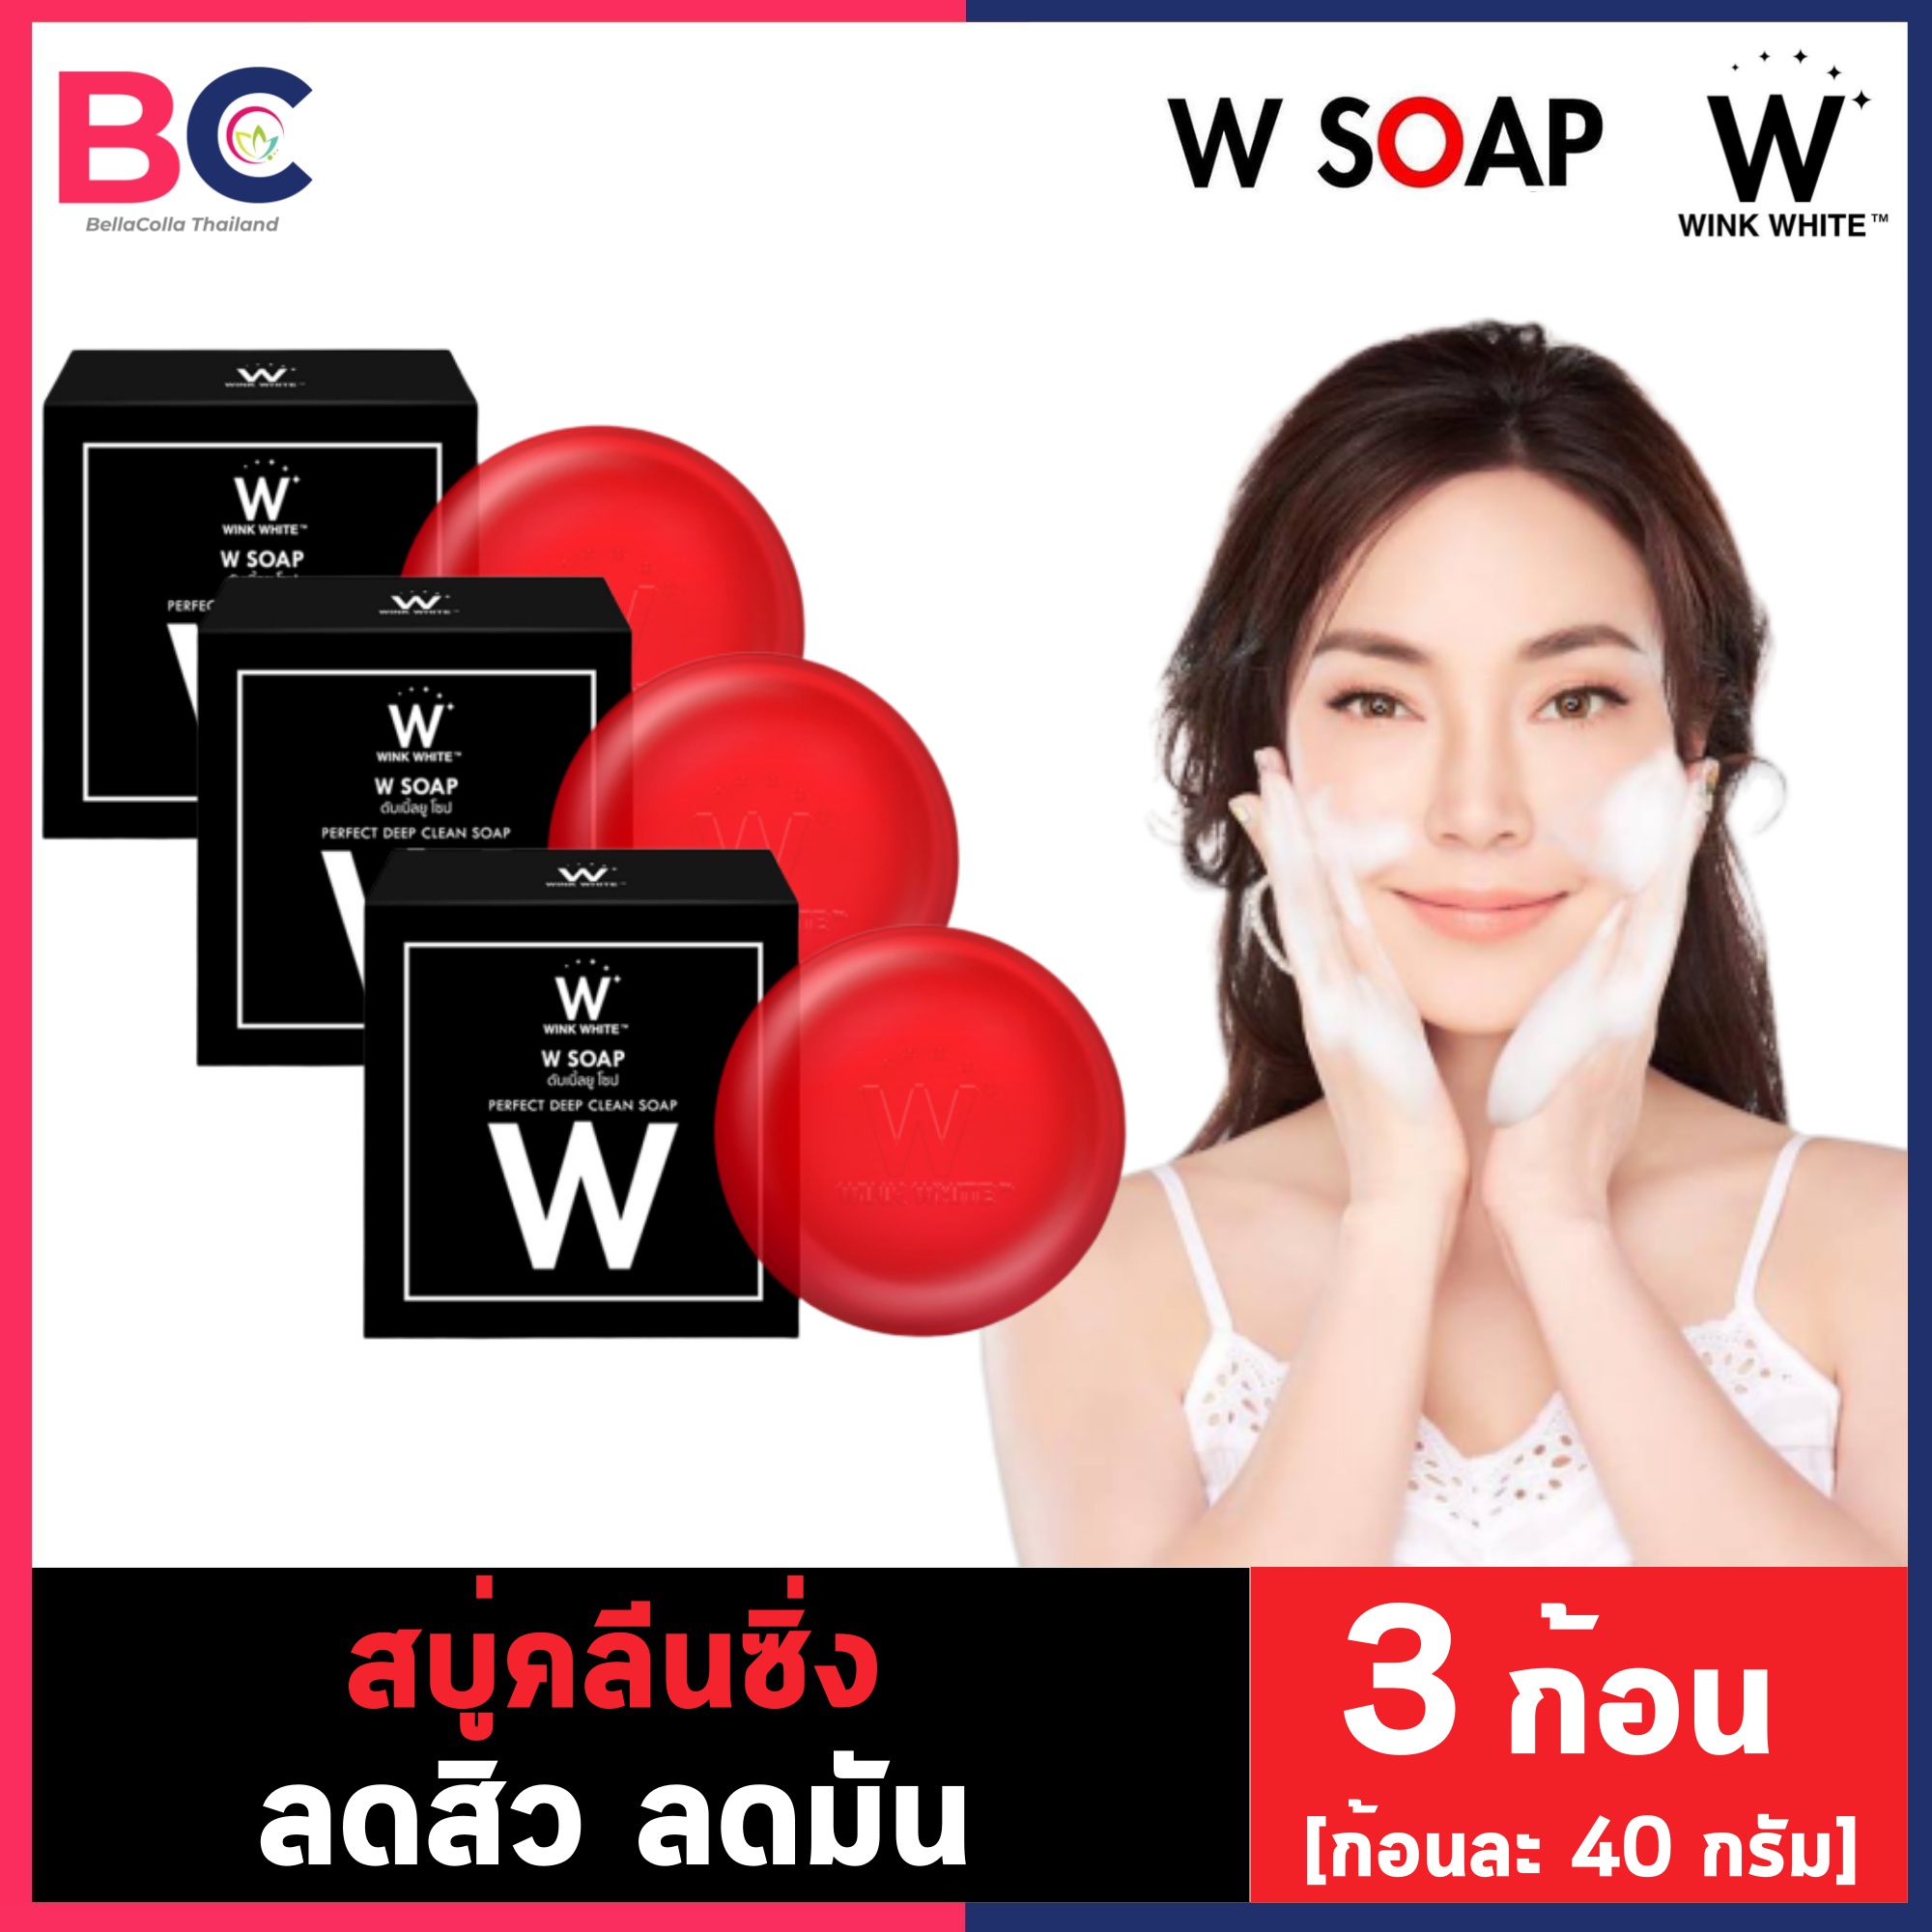 Wink white soap สบู่ วิงค์ไวท์ ดับเบิ้ลยู โซป สบู่แดง [3 ก้อน] [40 กรัม/ก้อน] W Soap สบู่ทำความสะอาดผิวหน้าฝ้า กระ จุดด่างดำ BC ความงาม